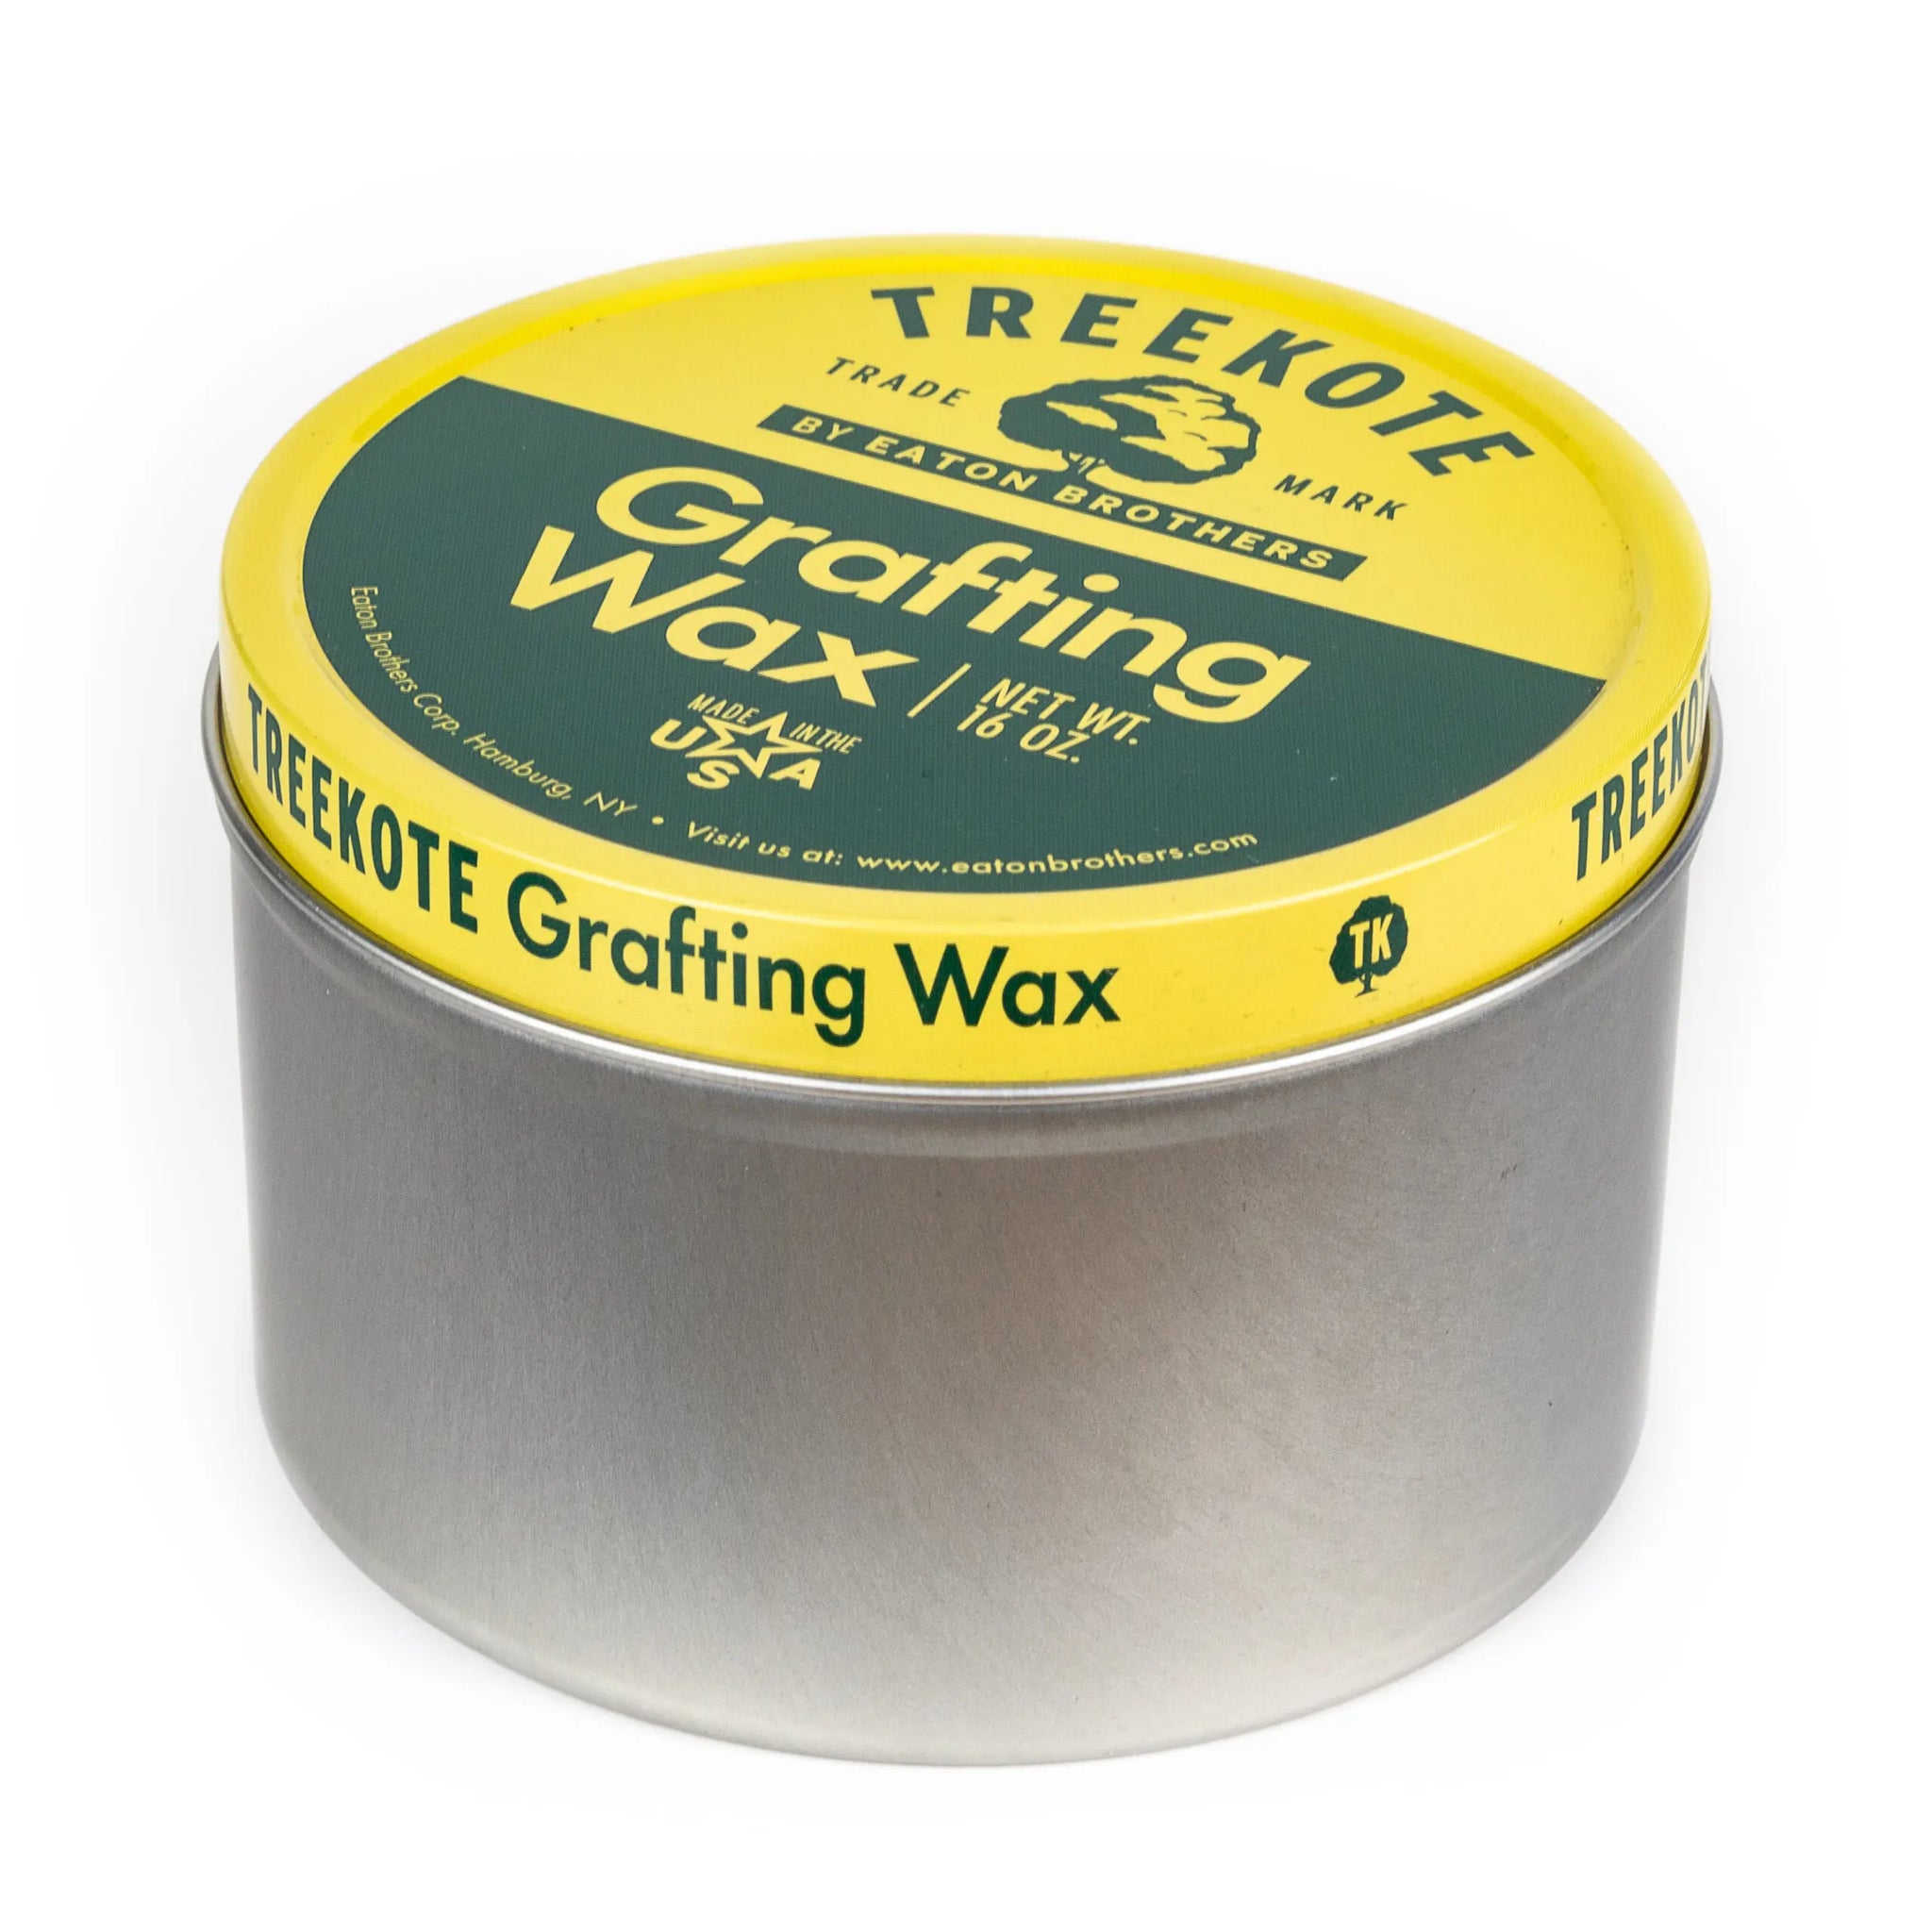 Treekote Grafting Wax - 1 lb.